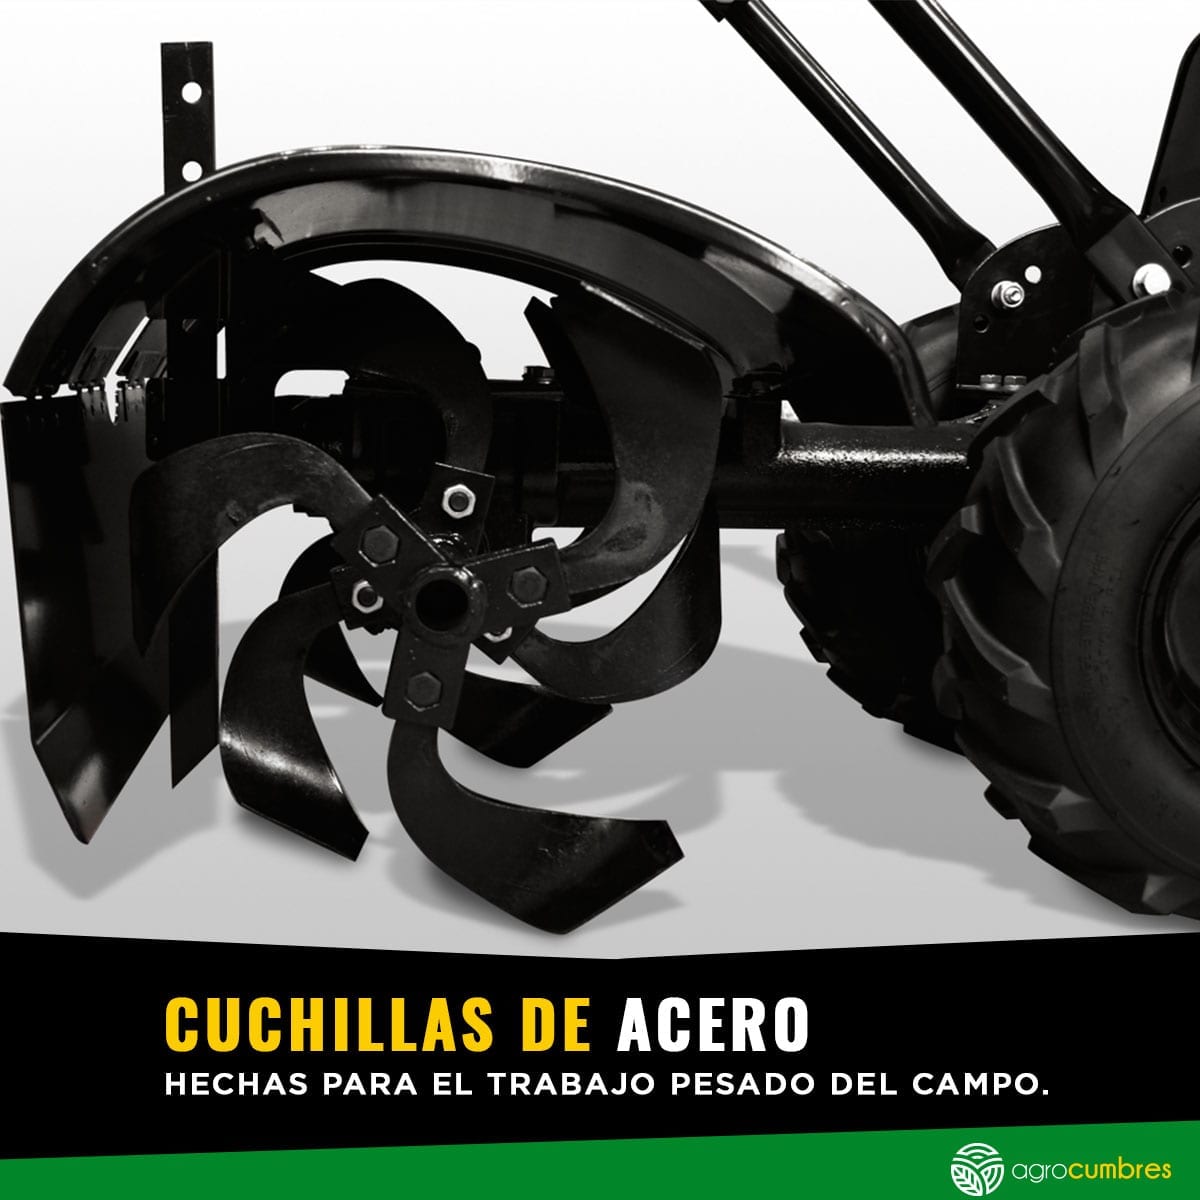 Motocultivador Bencinero - 6.5Hp - 500mm de Labranza